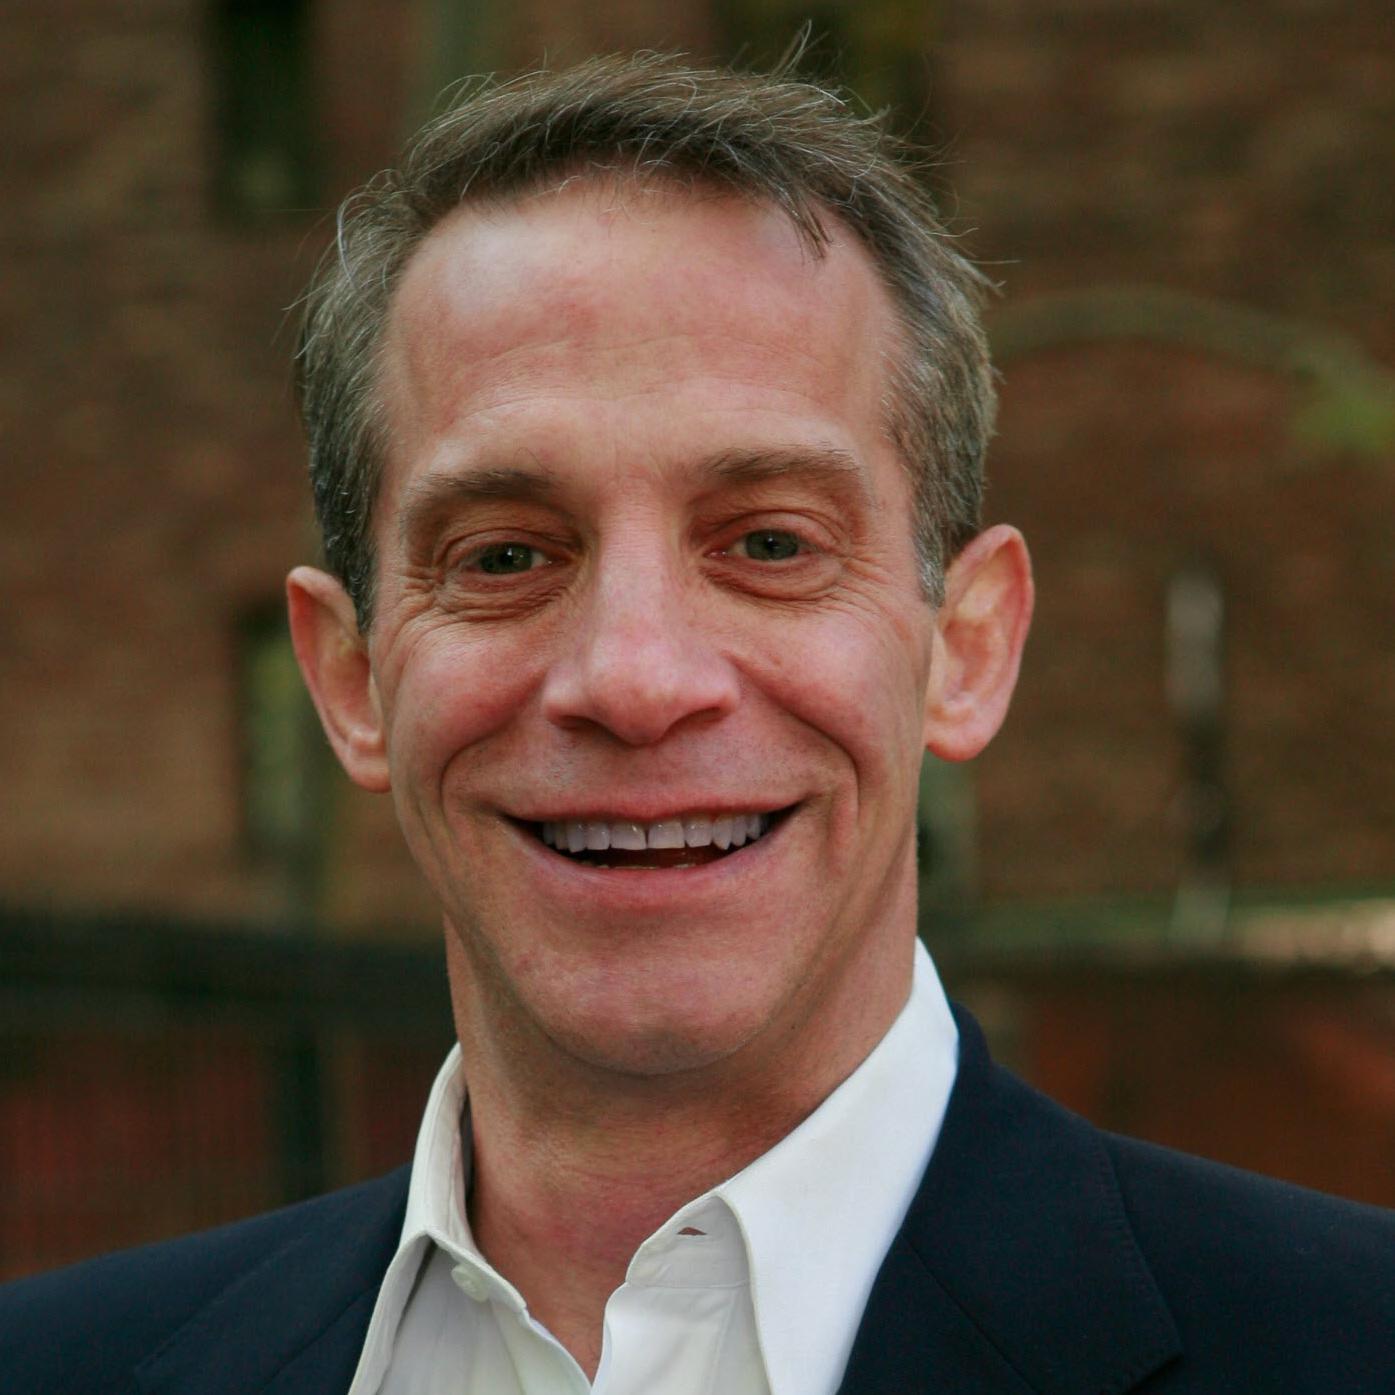 Michael Kaplan